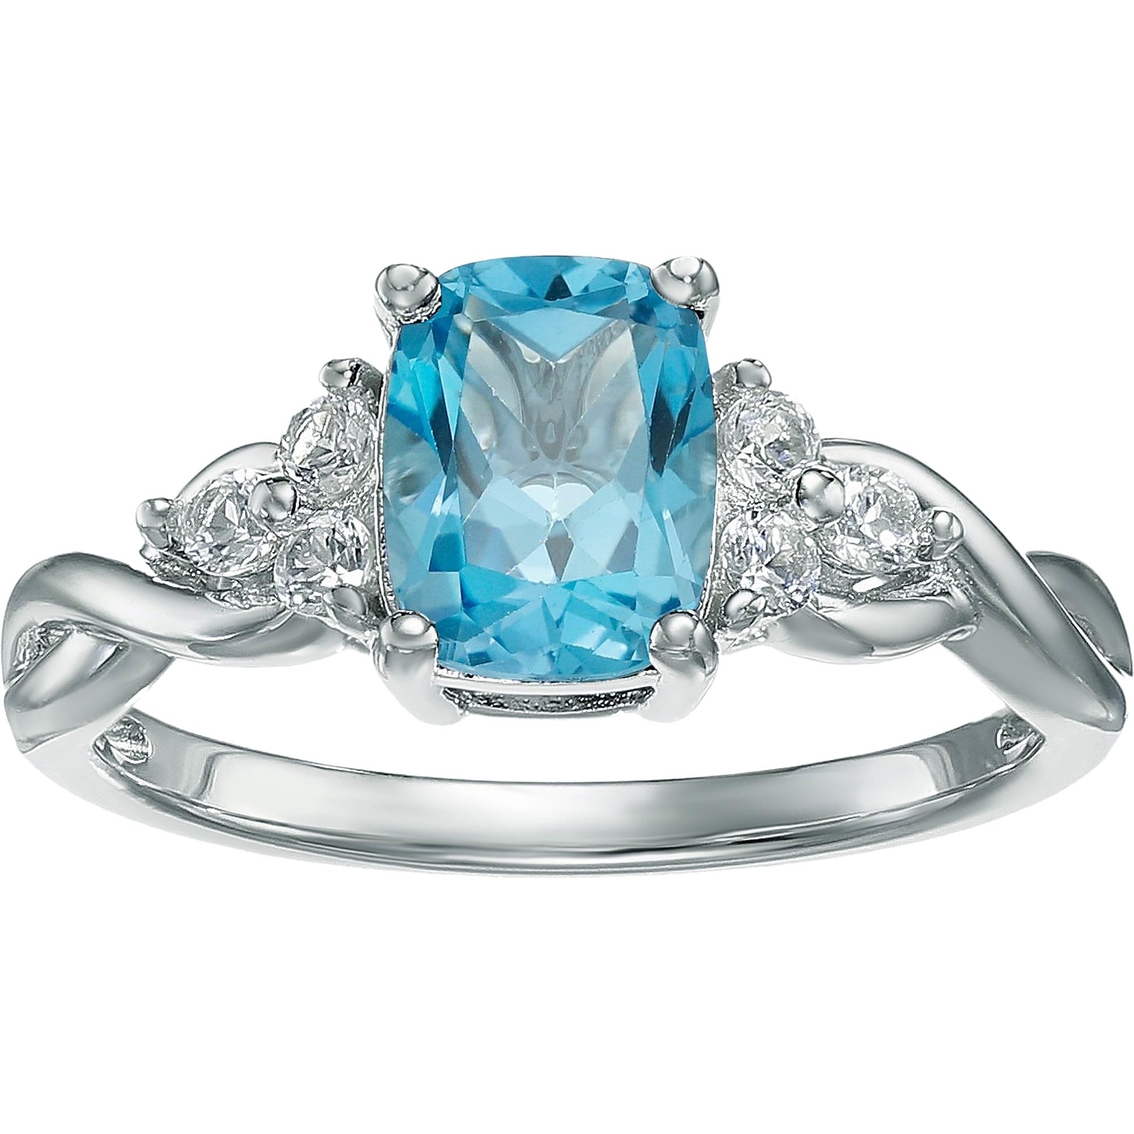 10k White Gold Blue Topaz And White Topaz Ring | Gemstone Rings ...